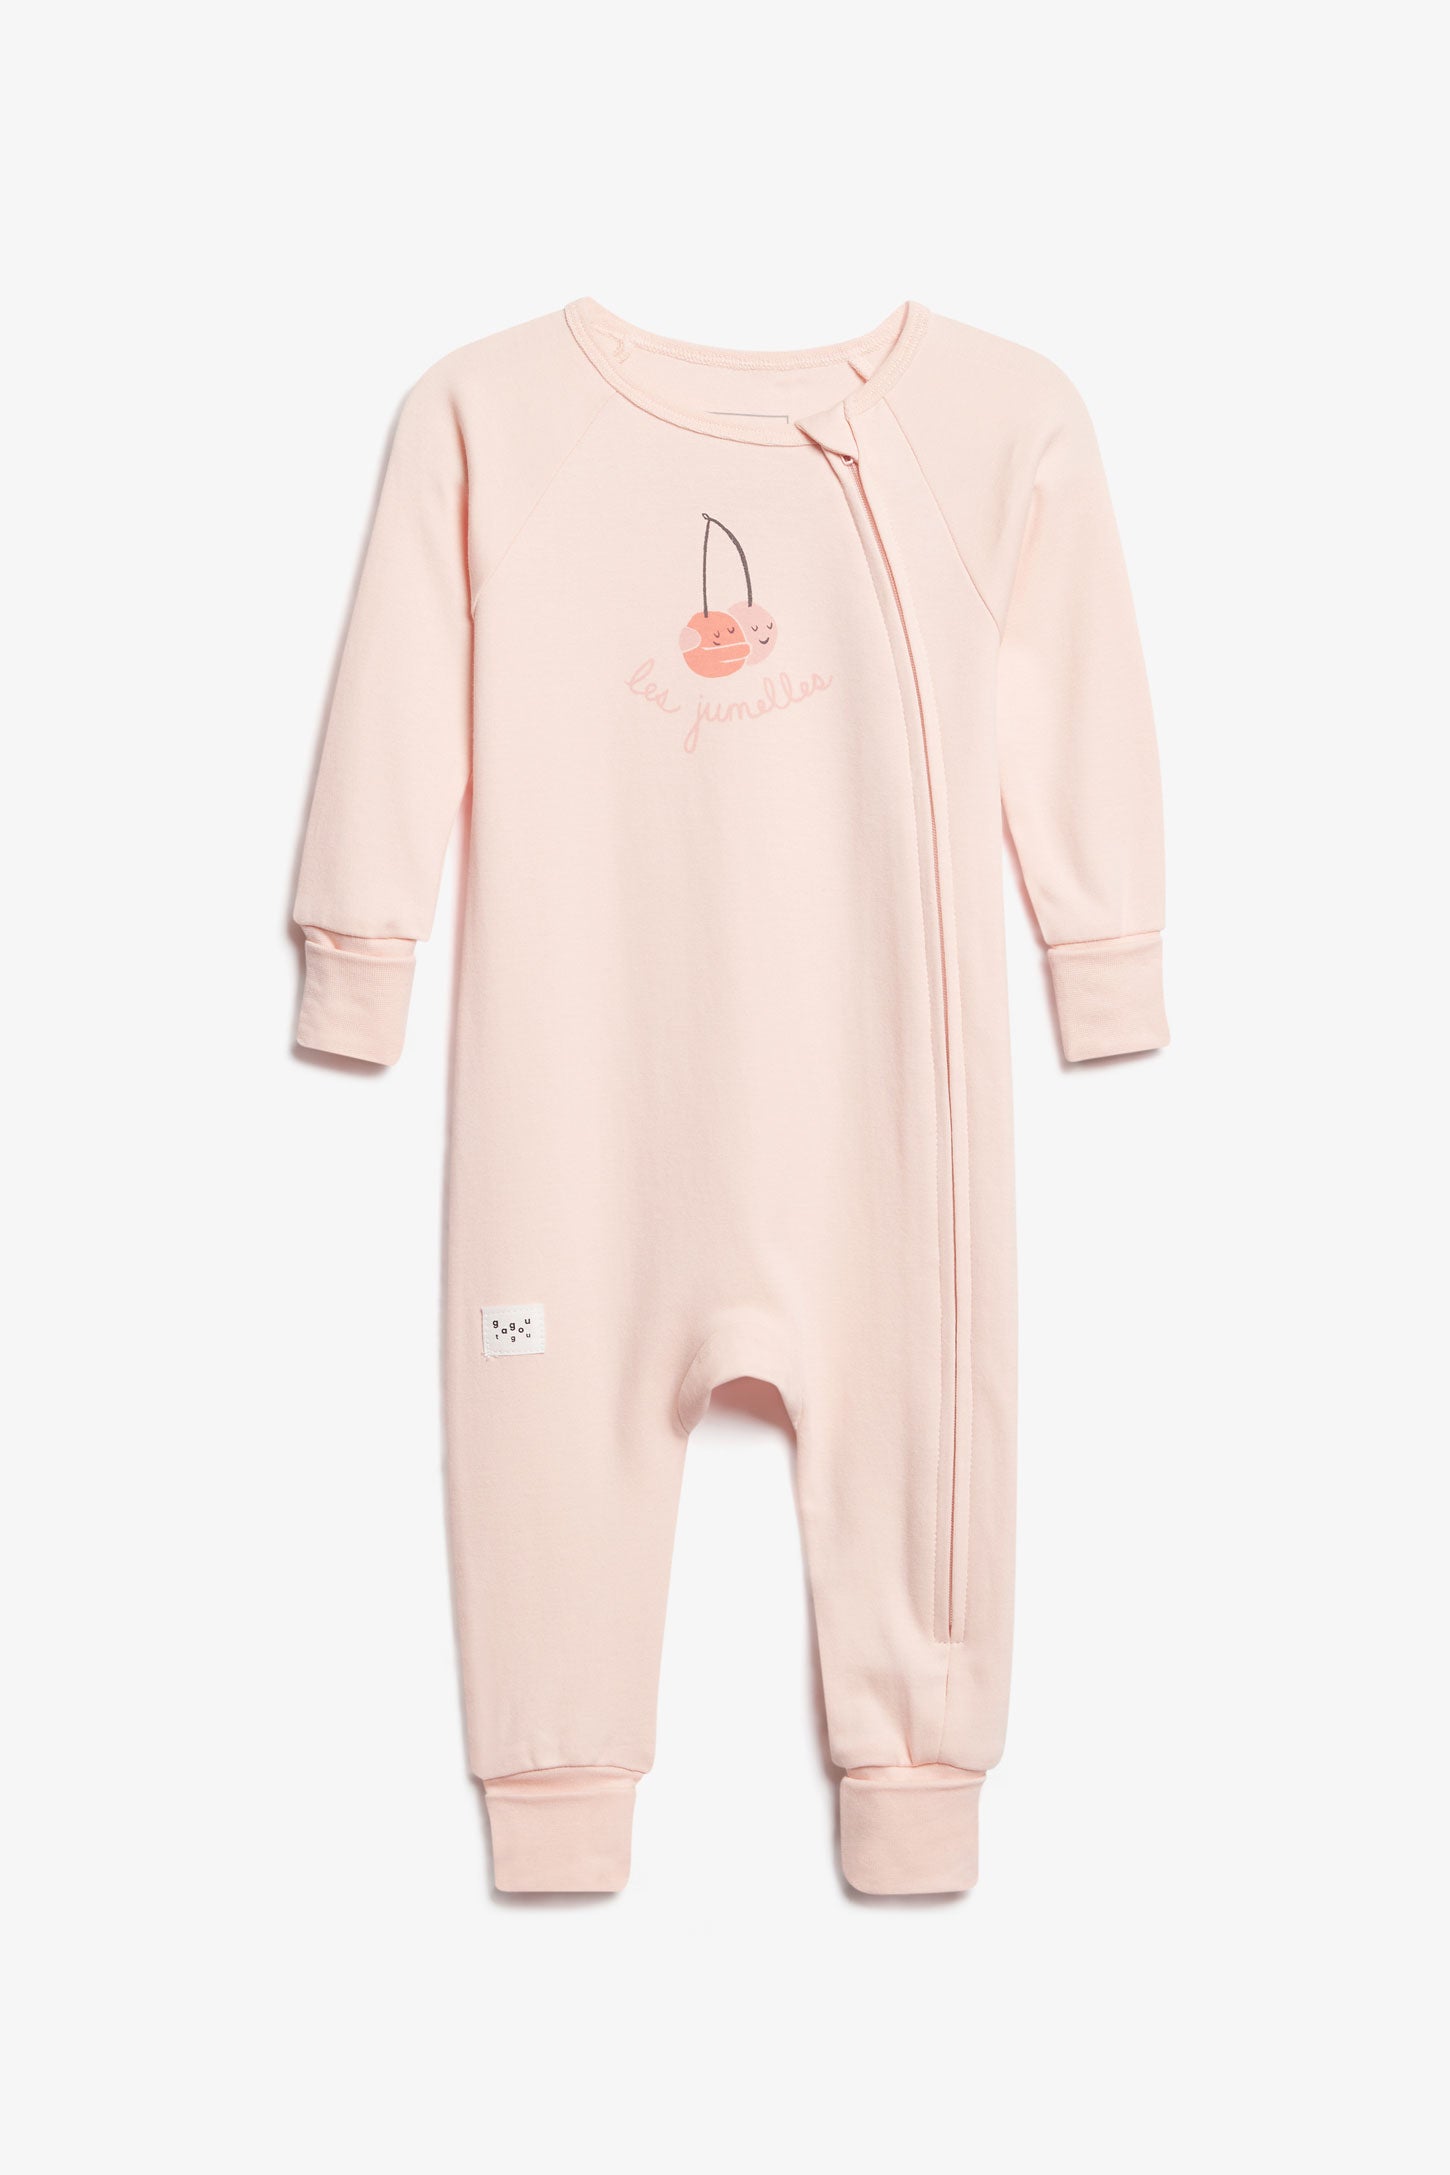 Pyjama 1-pièce évolutif en coton bio - Bébé fille && ROSE PALE